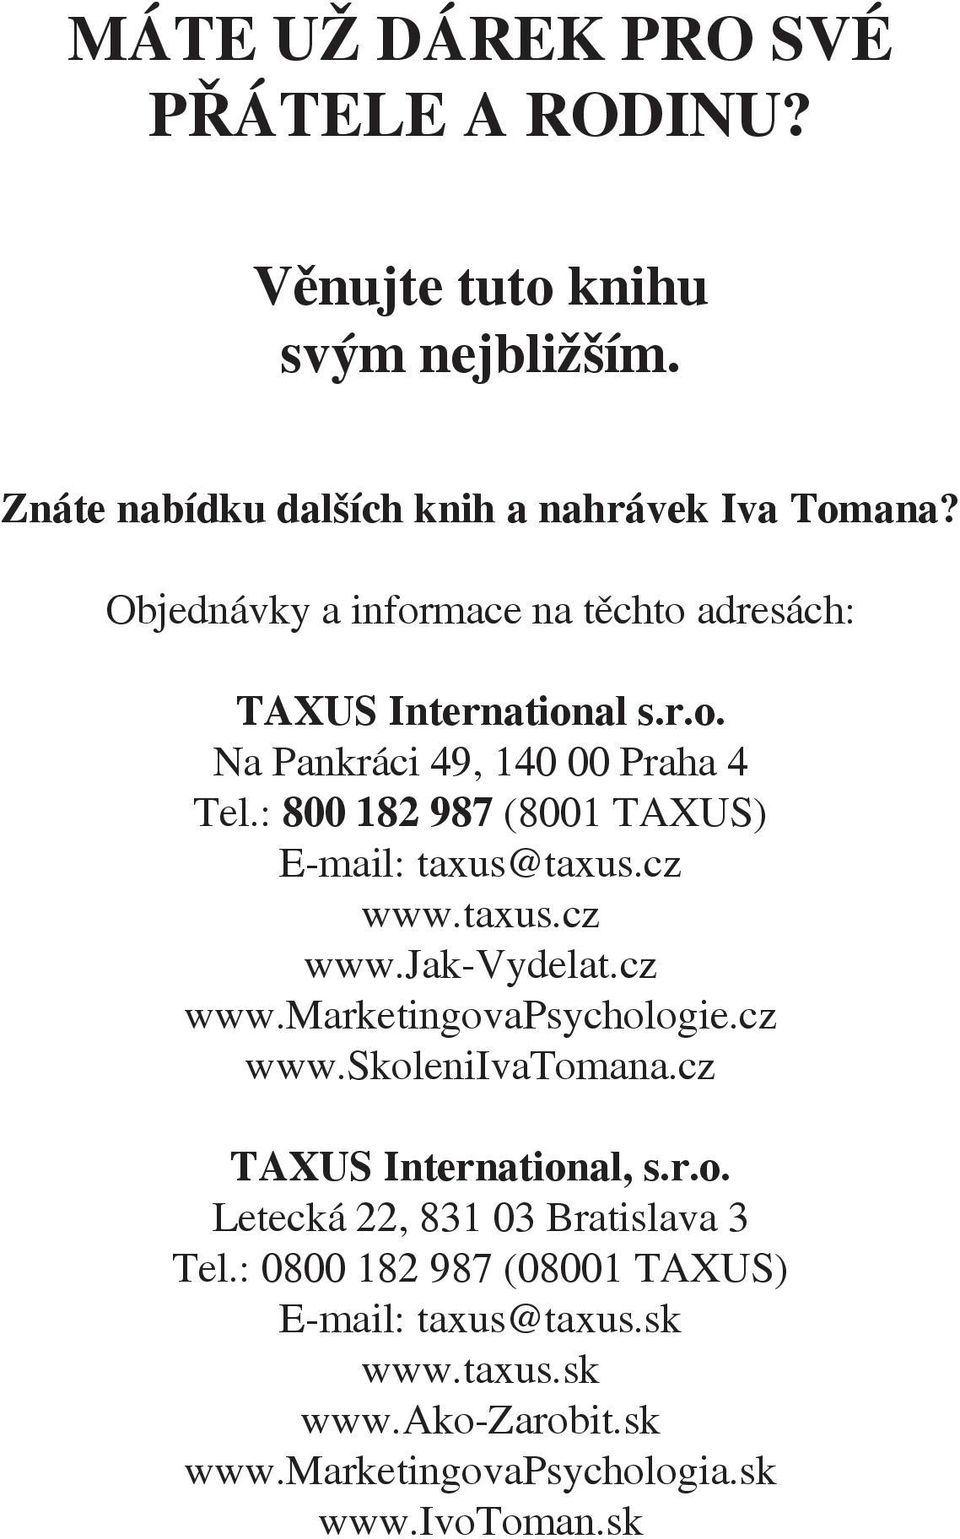 : 800 182 987 (8001 TAXUS) E-mail: taxus@taxus.cz www.taxus.cz www.jak-vydelat.cz www.marketingovapsychologie.cz www.skoleniivatomana.